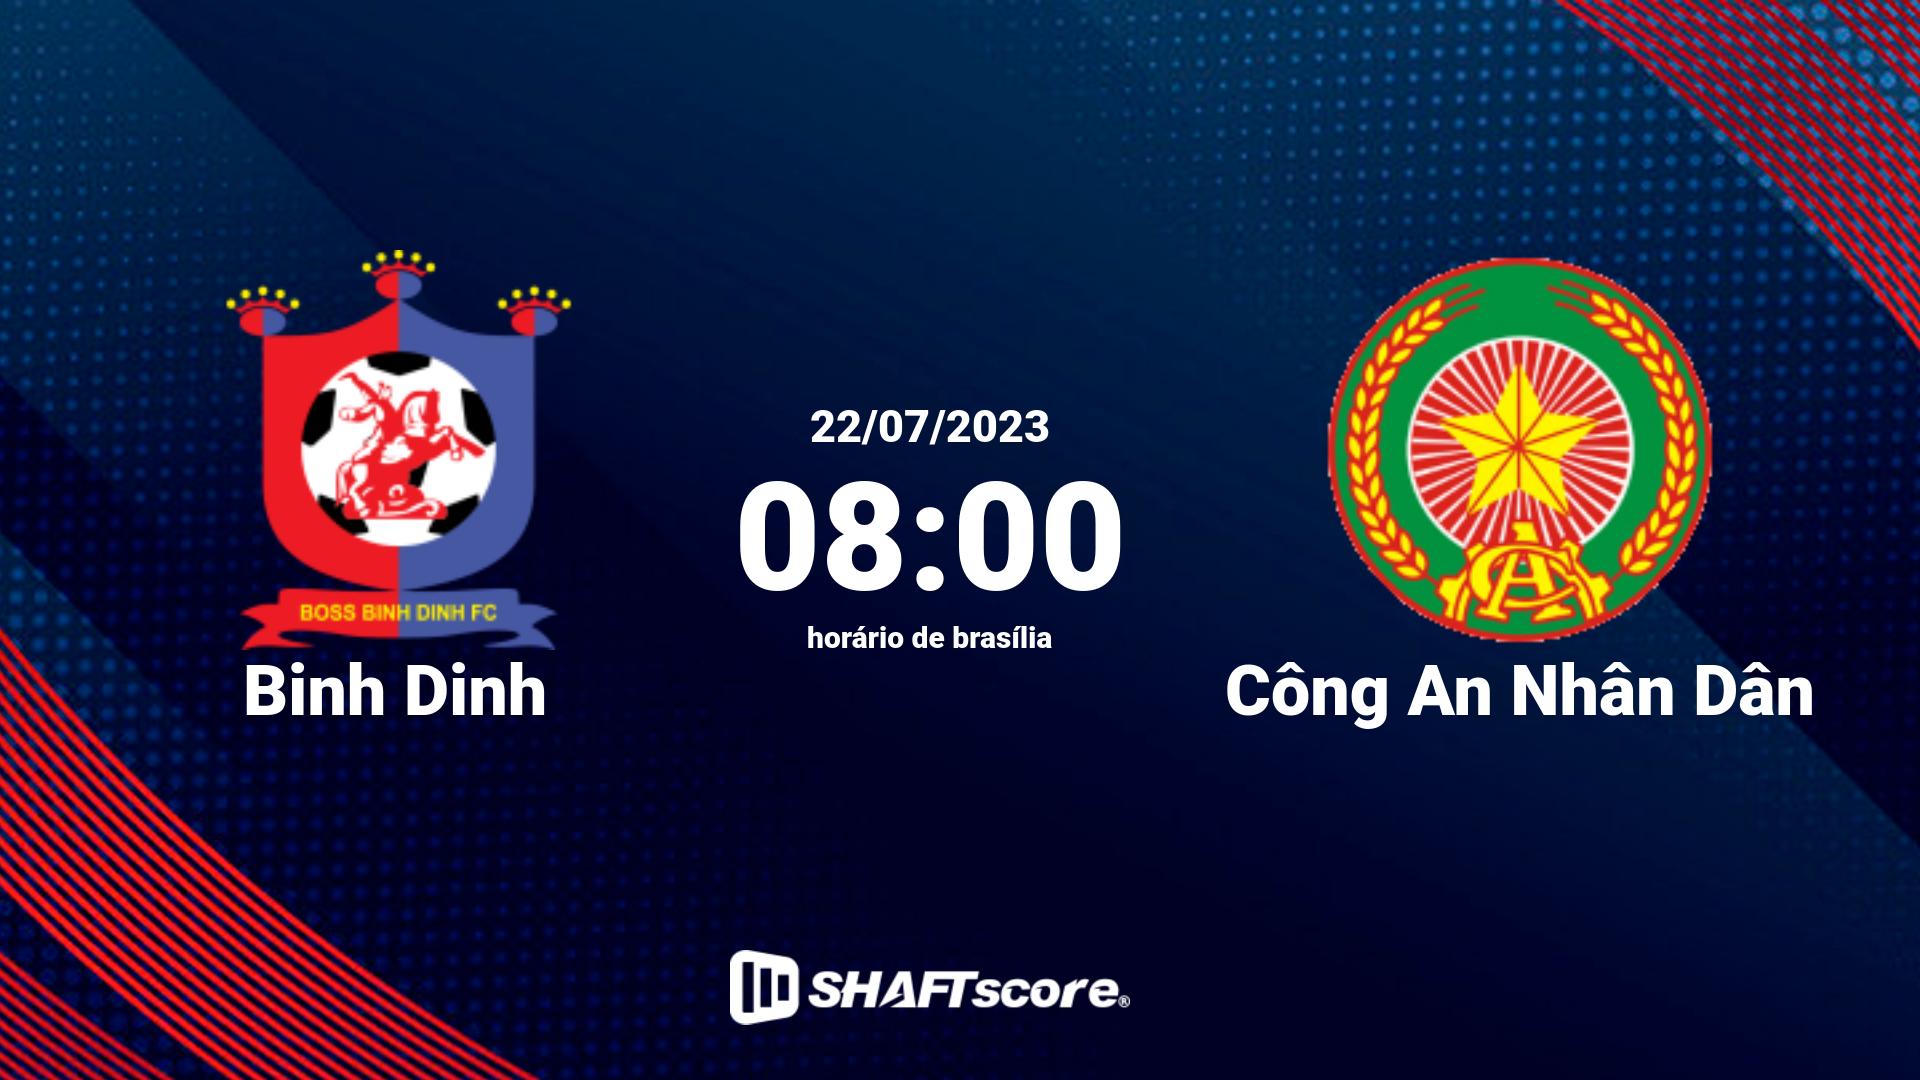 Estatísticas do jogo Binh Dinh vs Công An Nhân Dân 22.07 08:00